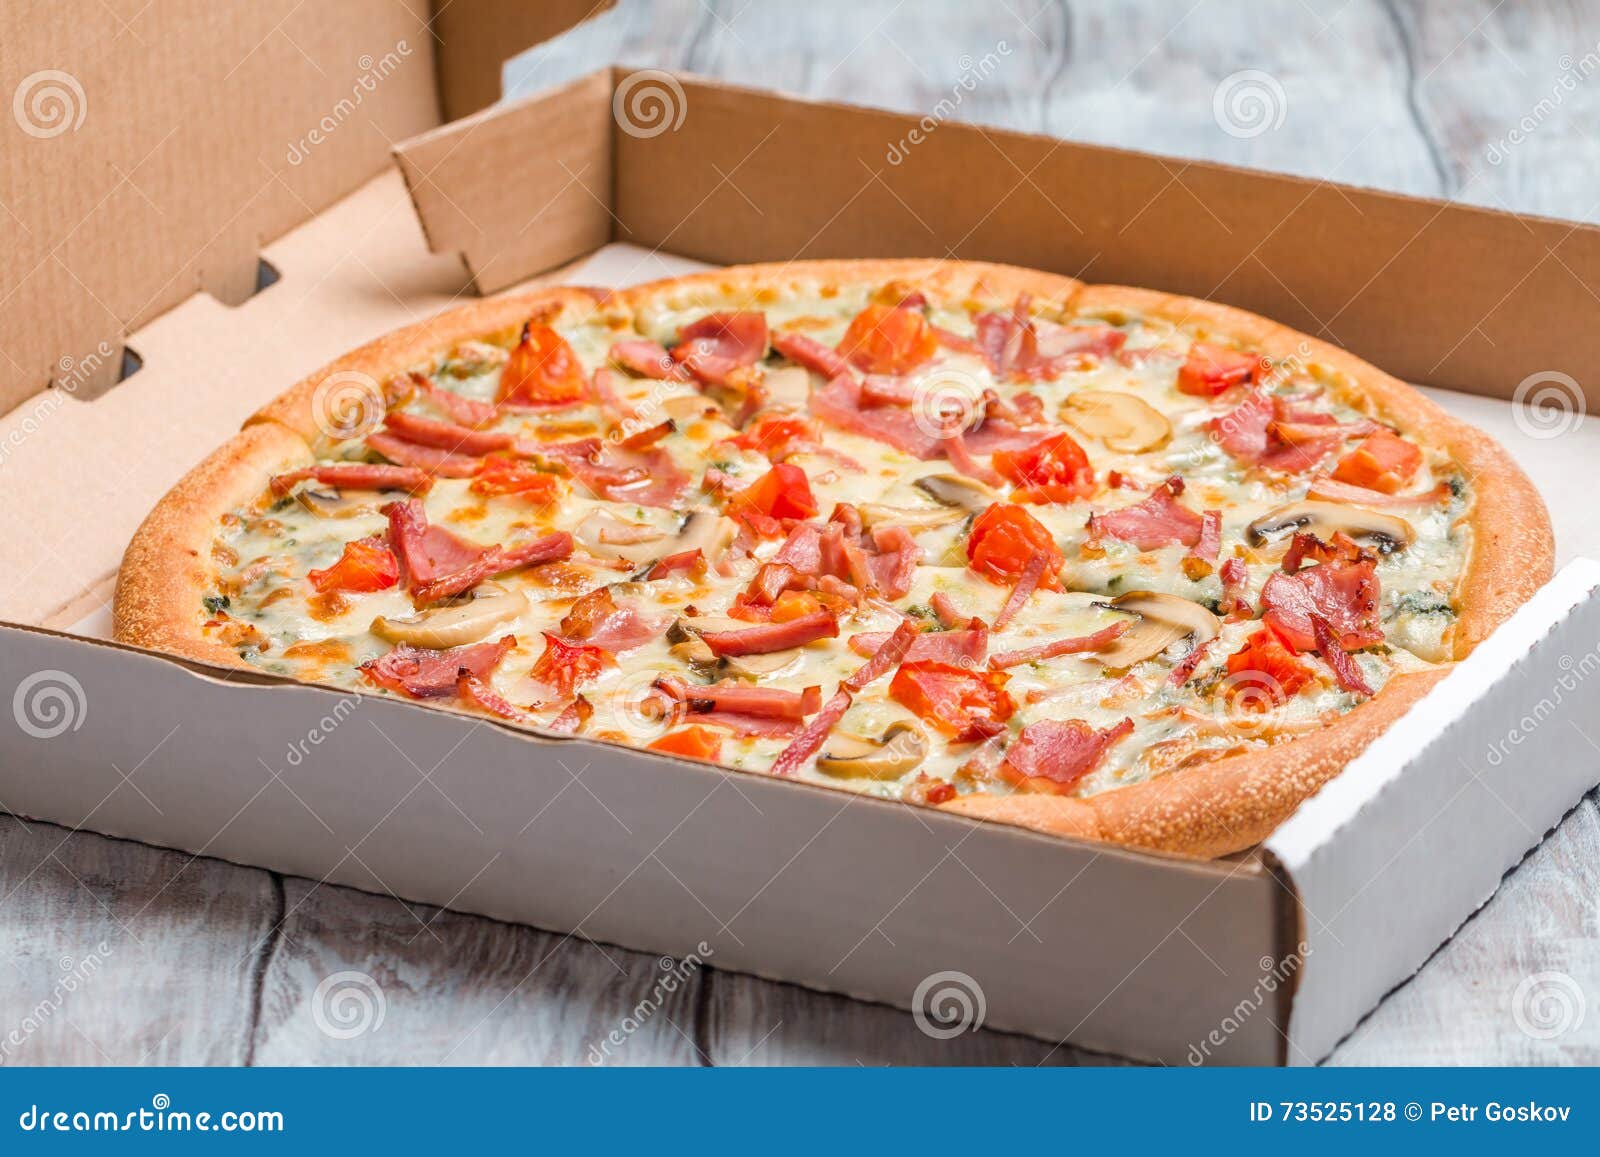 юлия высоцкая рецепт пиццы фото 78